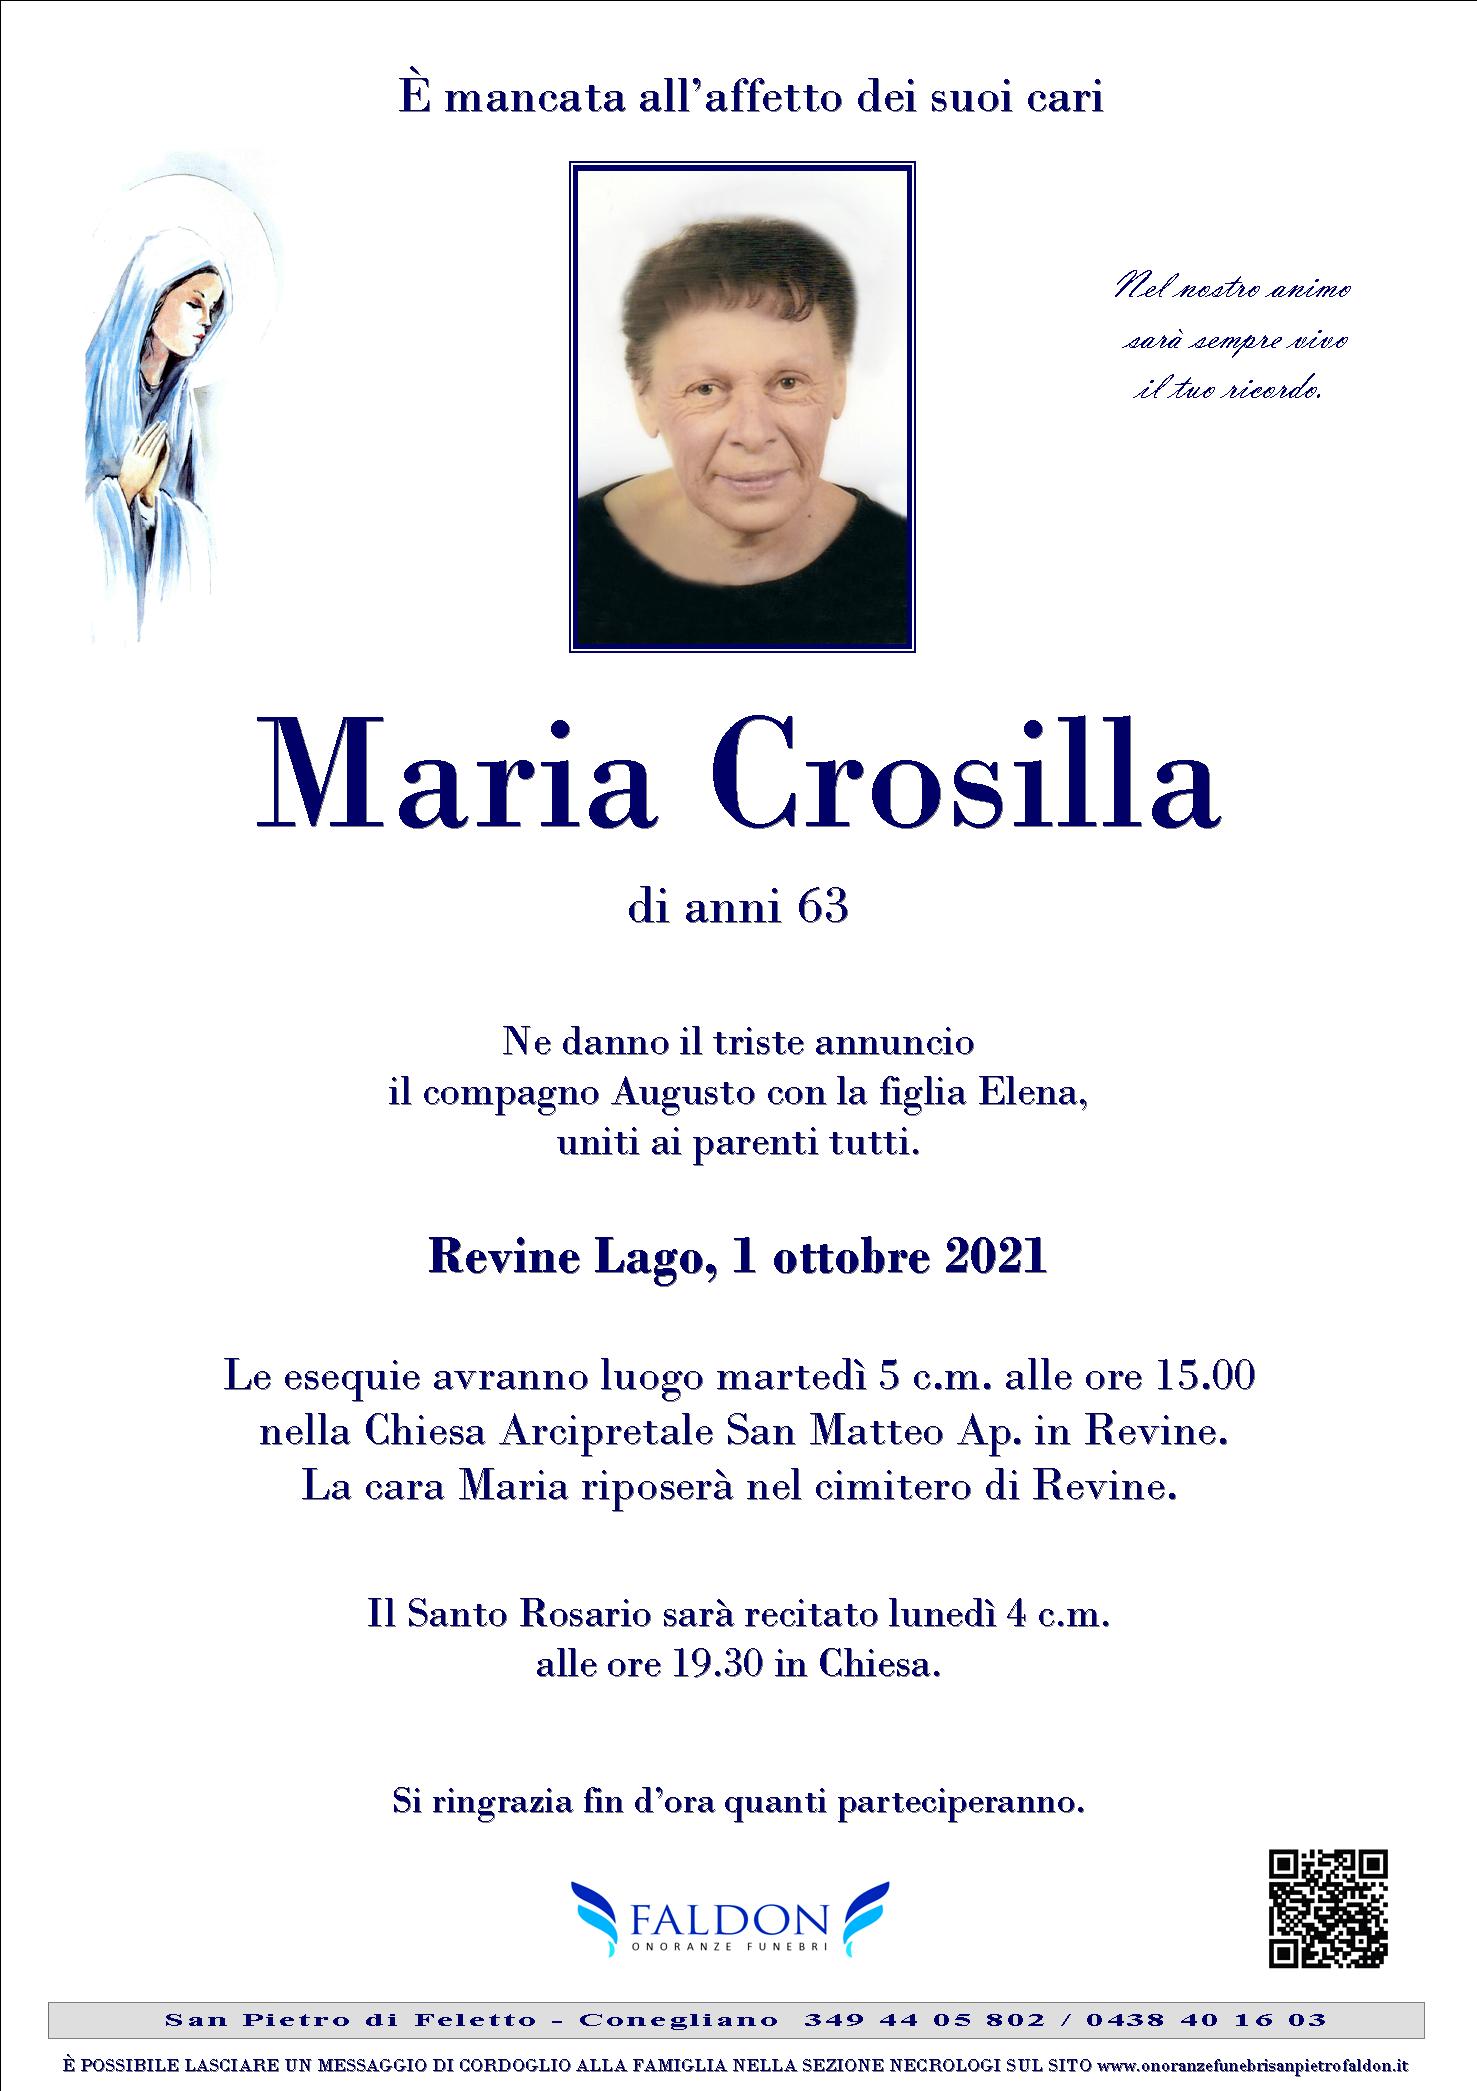 Maria Crosilla